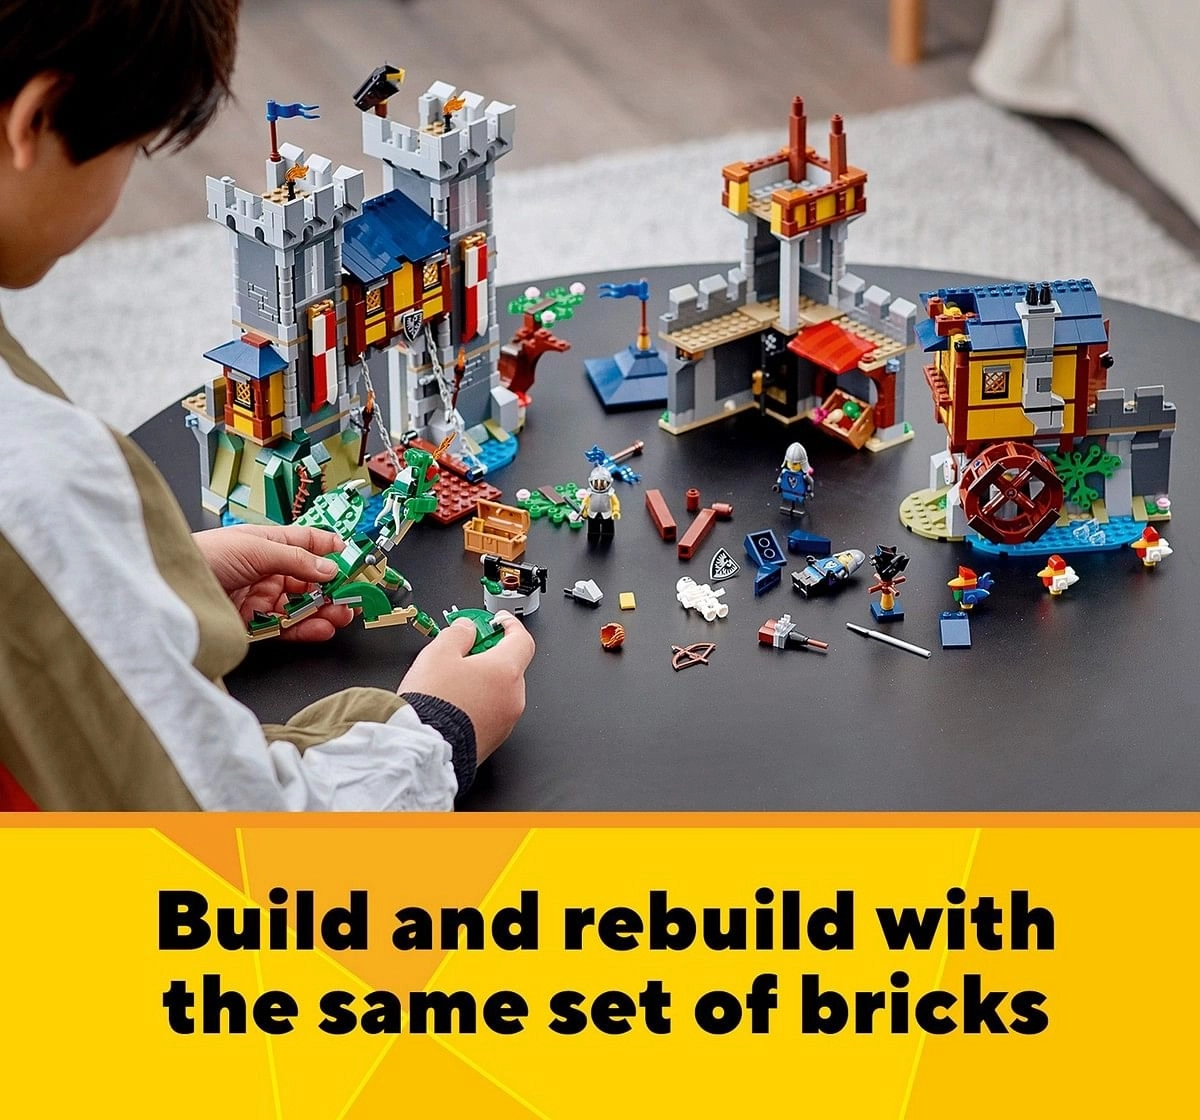 Lego 31120 Medieval Castle Building Blocks Multicolour 9Y+